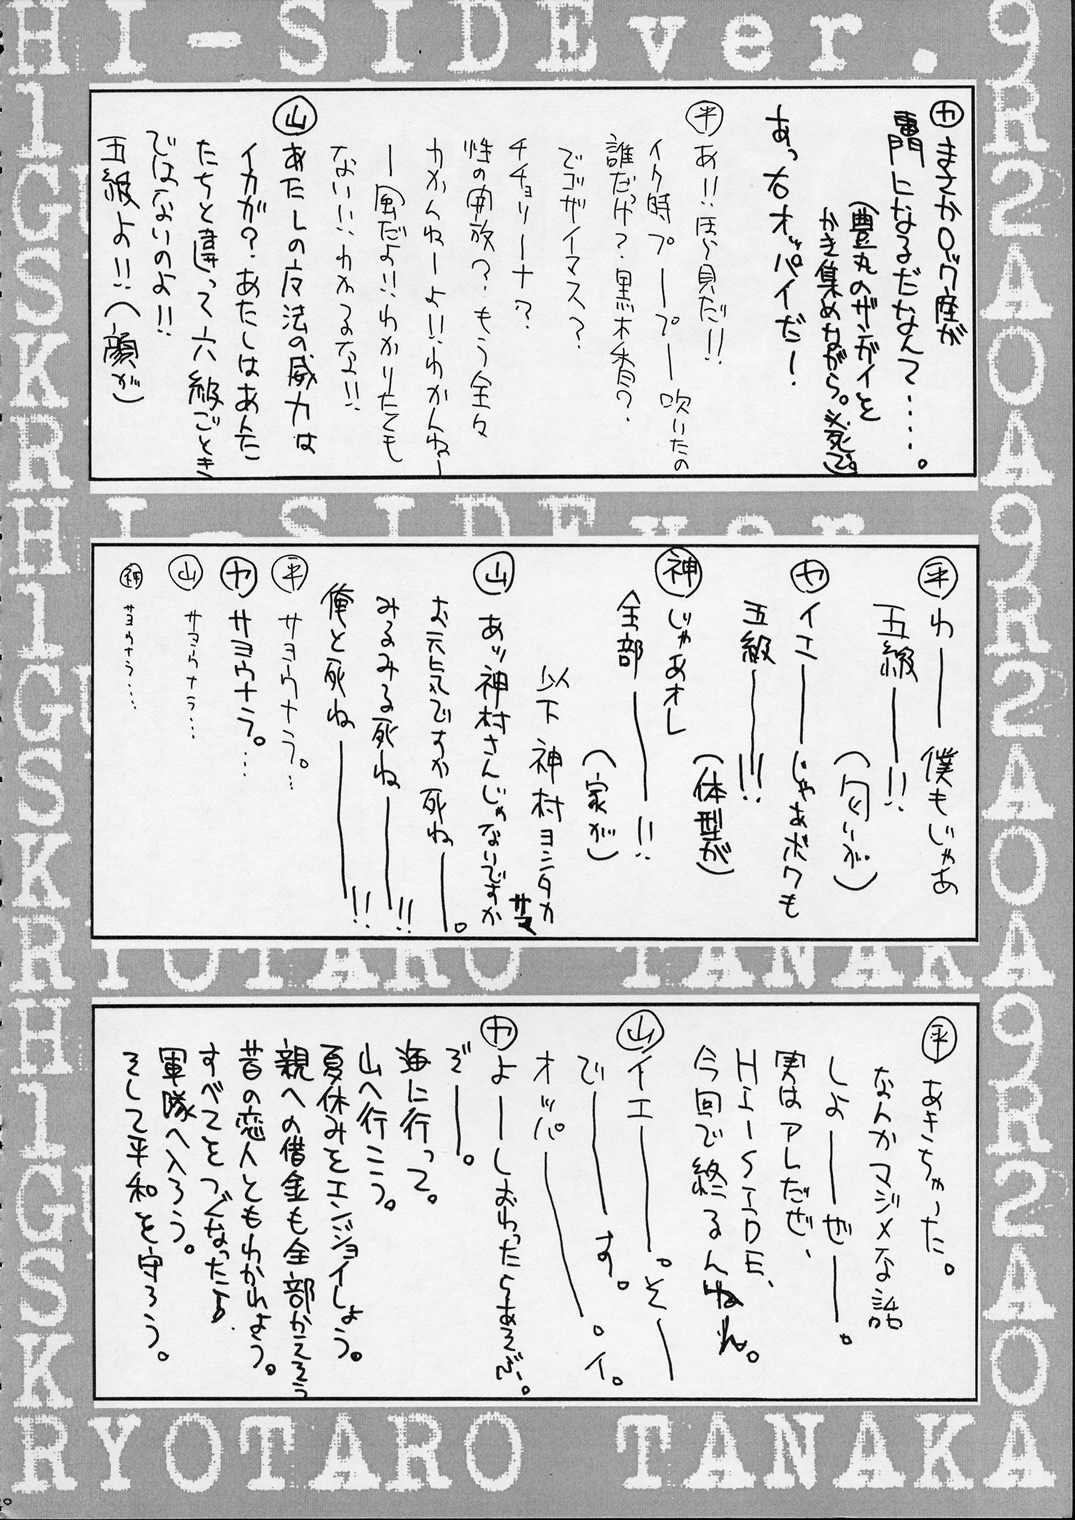 [GUY-YA (Hirano Kouta)] HI SIDE 9 (Famous Detective Conan) [男屋 (平野耕太)] HI SIDE 9 (名探偵コナン)